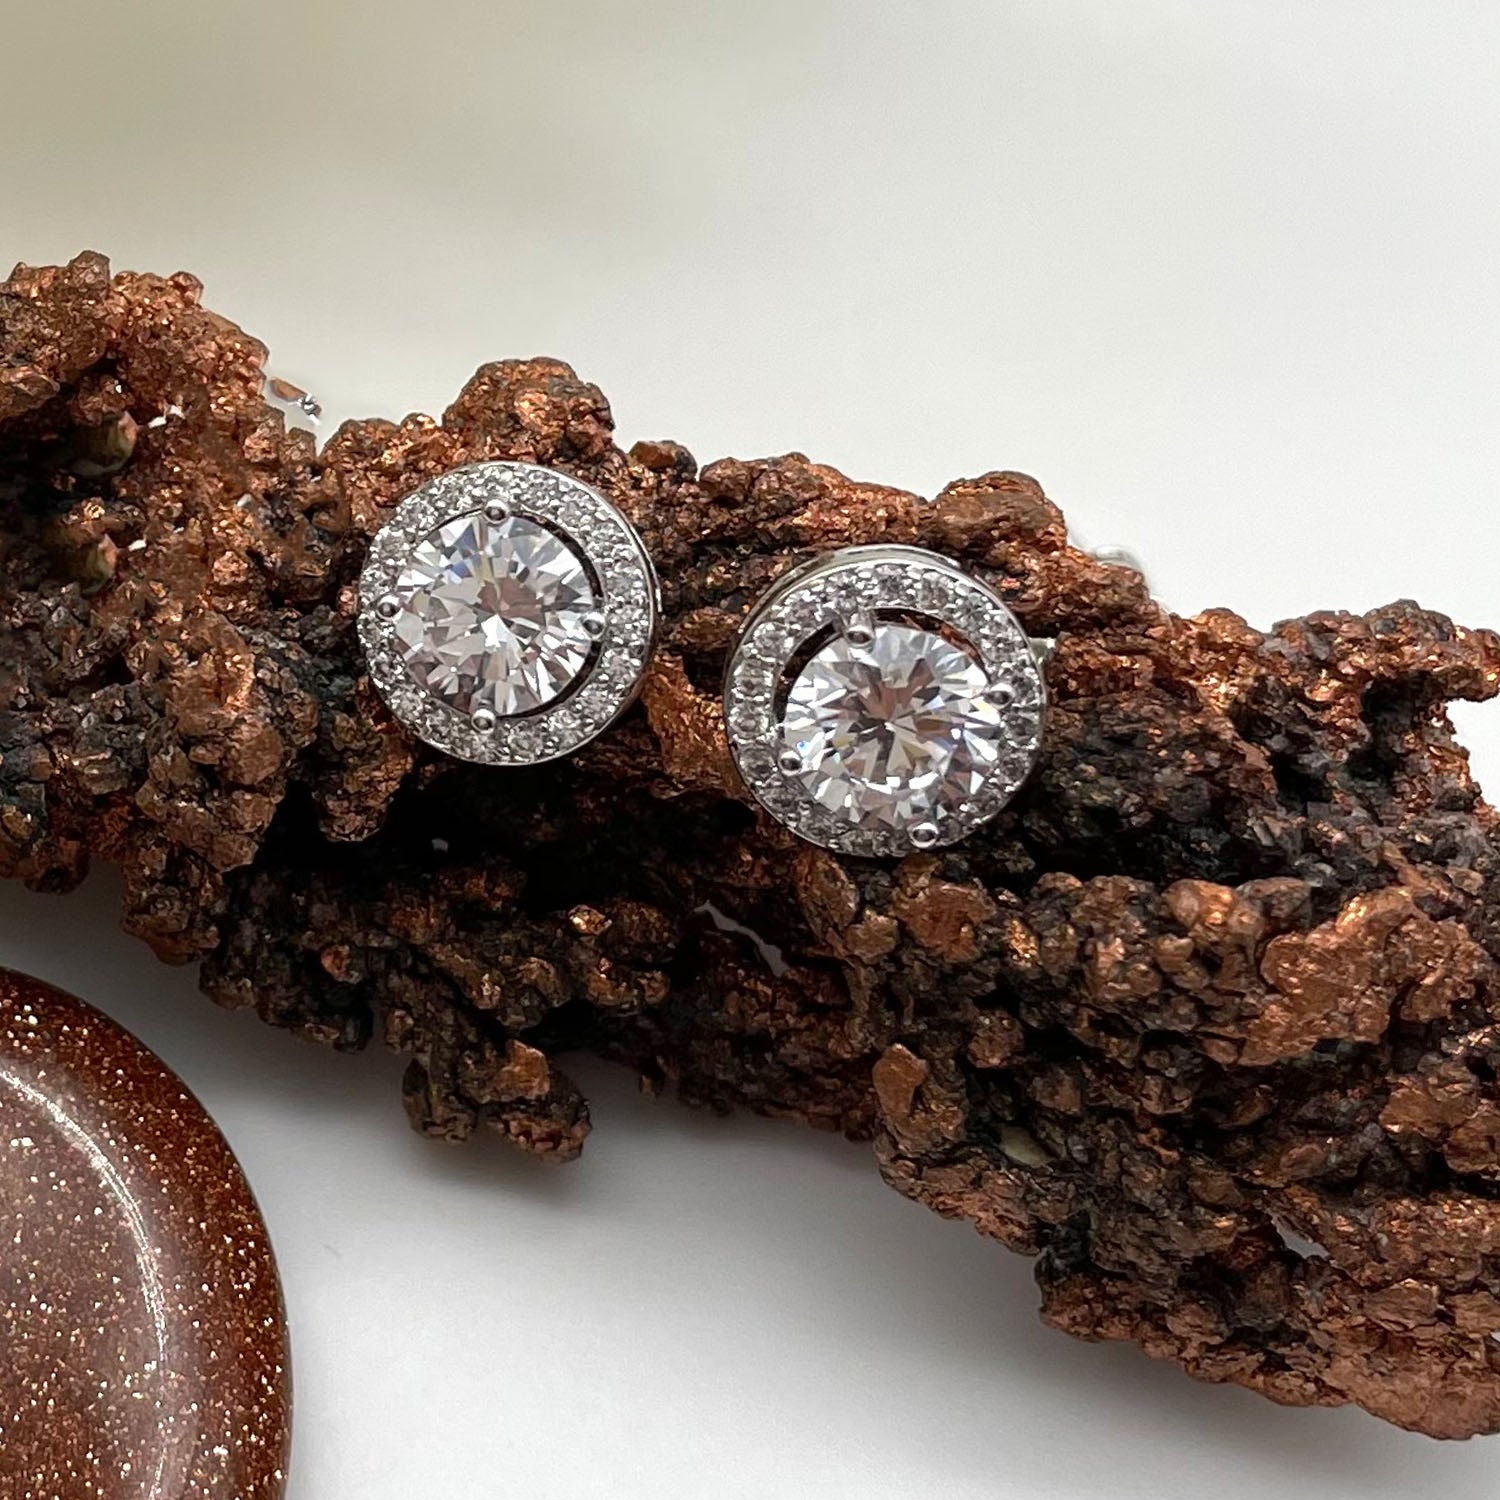 Ana Round CZ Diamond Stud Earrings, Silver - Zahra Jewelry